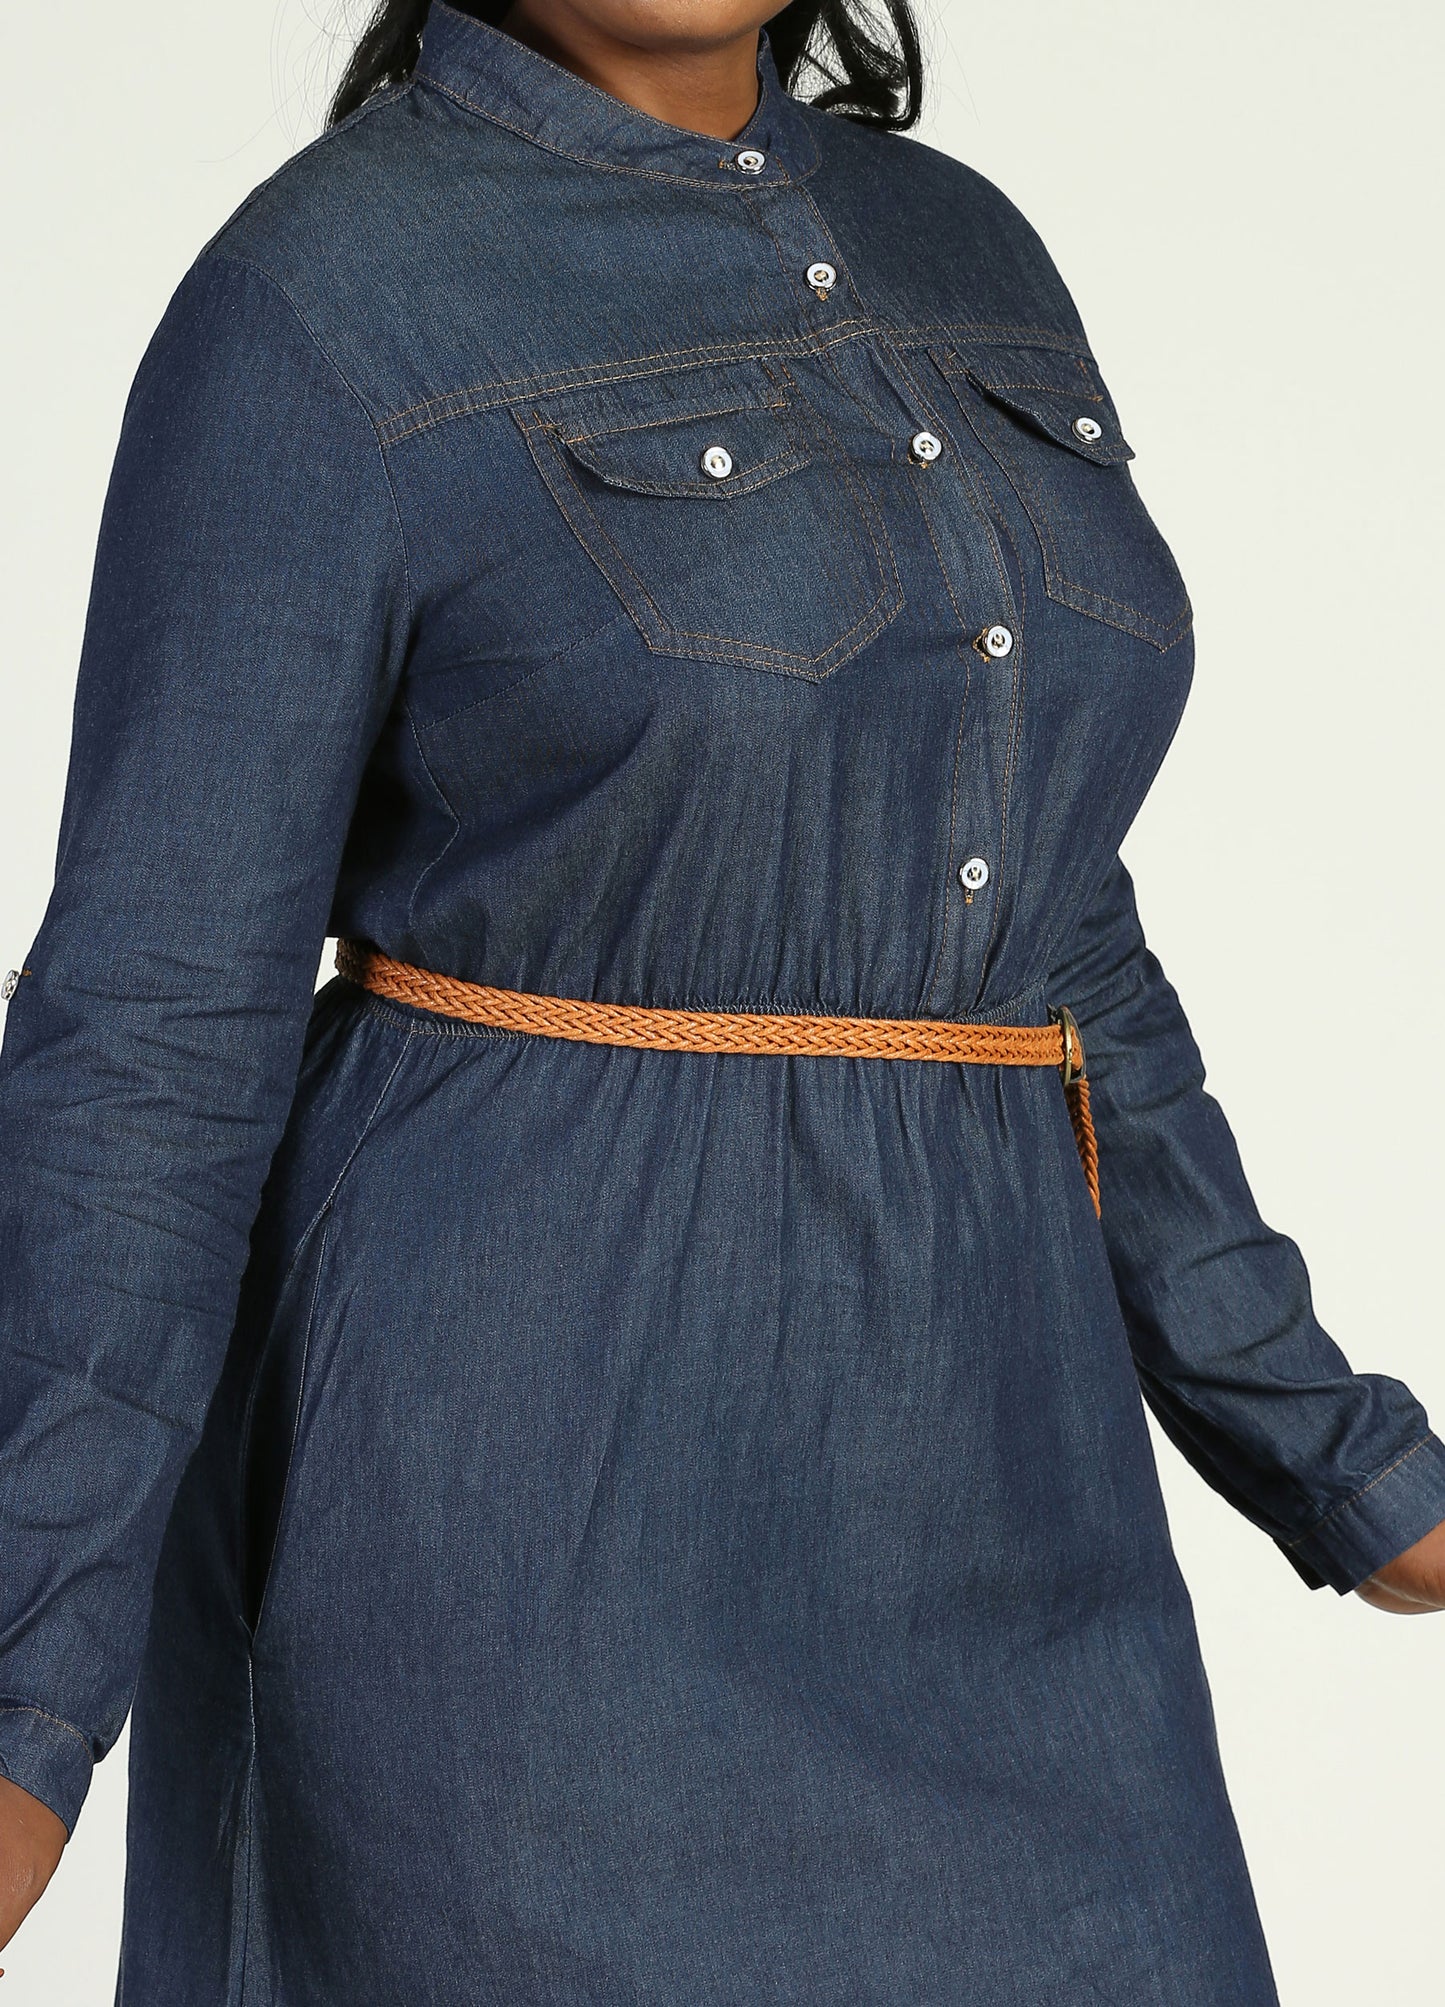 MECALA Women's Long Sleeve Denim Shirt Dress-Dark Blue detail